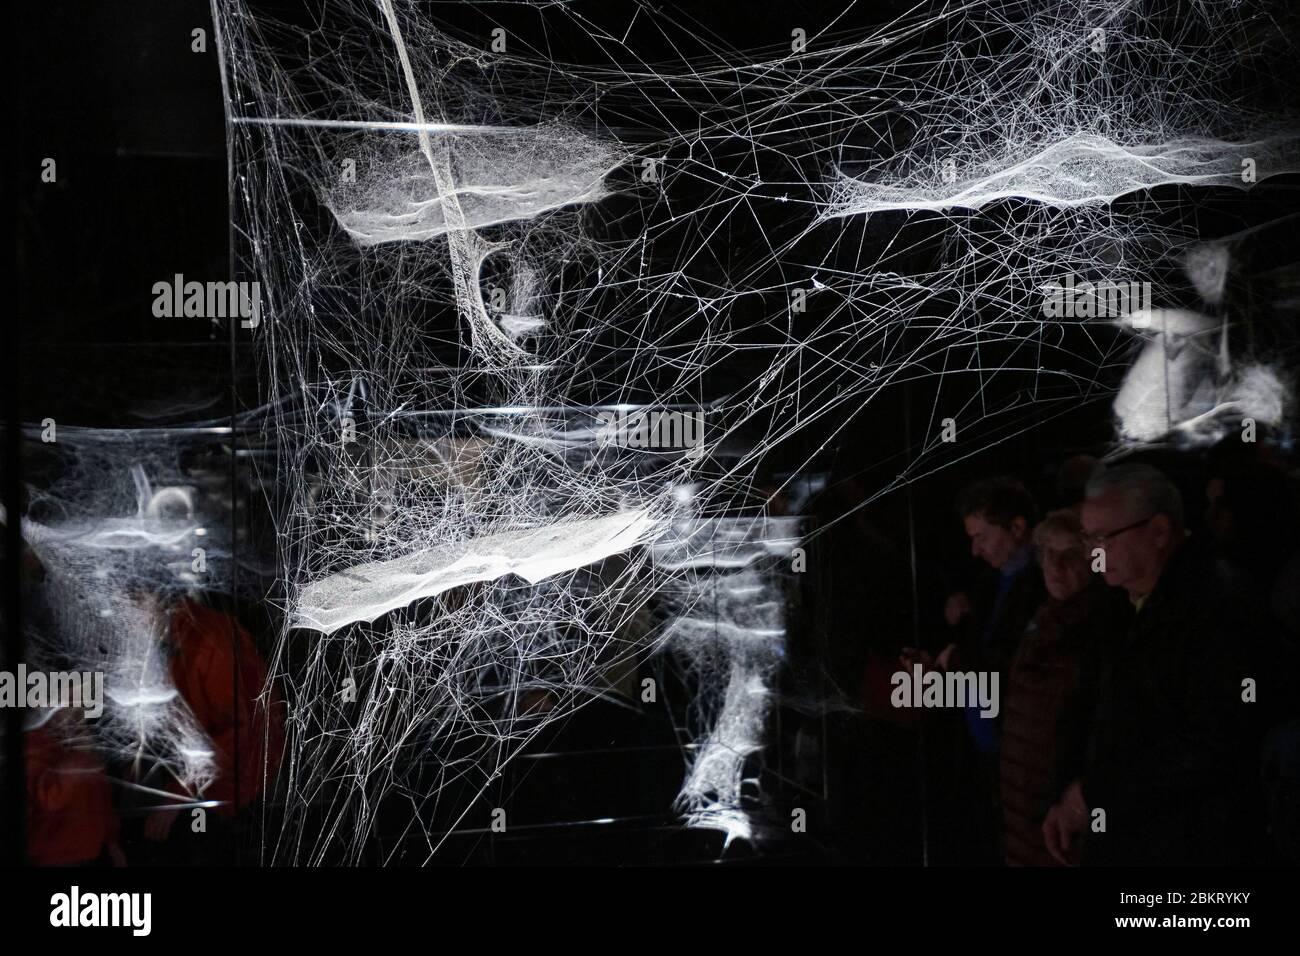 France, Paris, Palais de Tokyo, exposition sur l'air de l'artiste Tomas  Saraceno, toile d'araignée formant l'œuvre des tombes d'at-Tent (s) ion  Photo Stock - Alamy